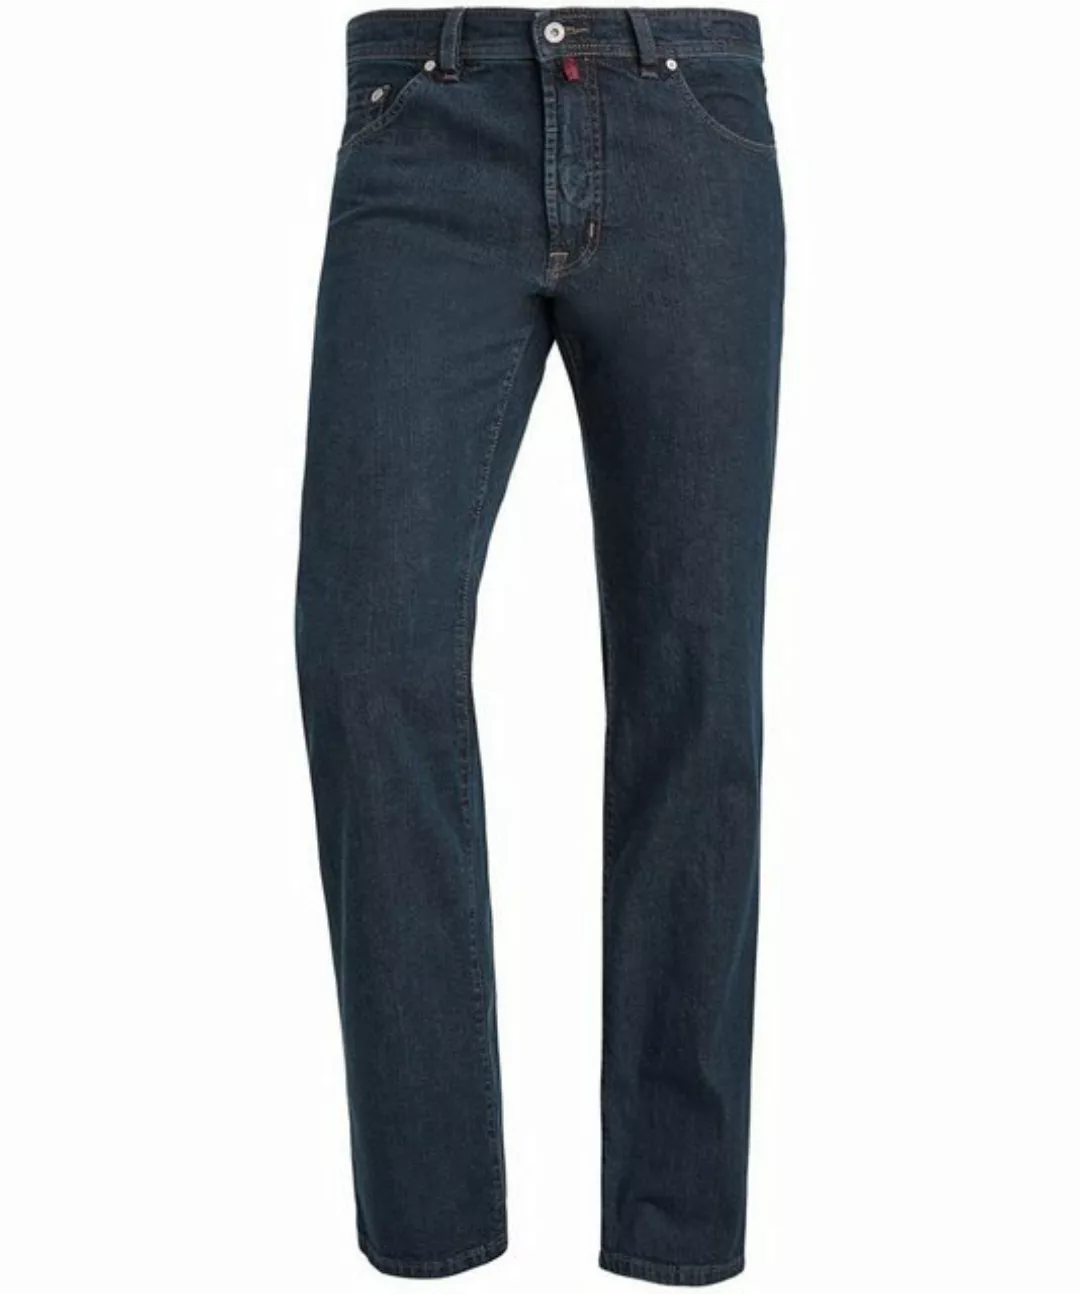 Pierre Cardin 5-Pocket-Jeans PIERRE CARDIN DIJON blue black indigo 3231 161 günstig online kaufen